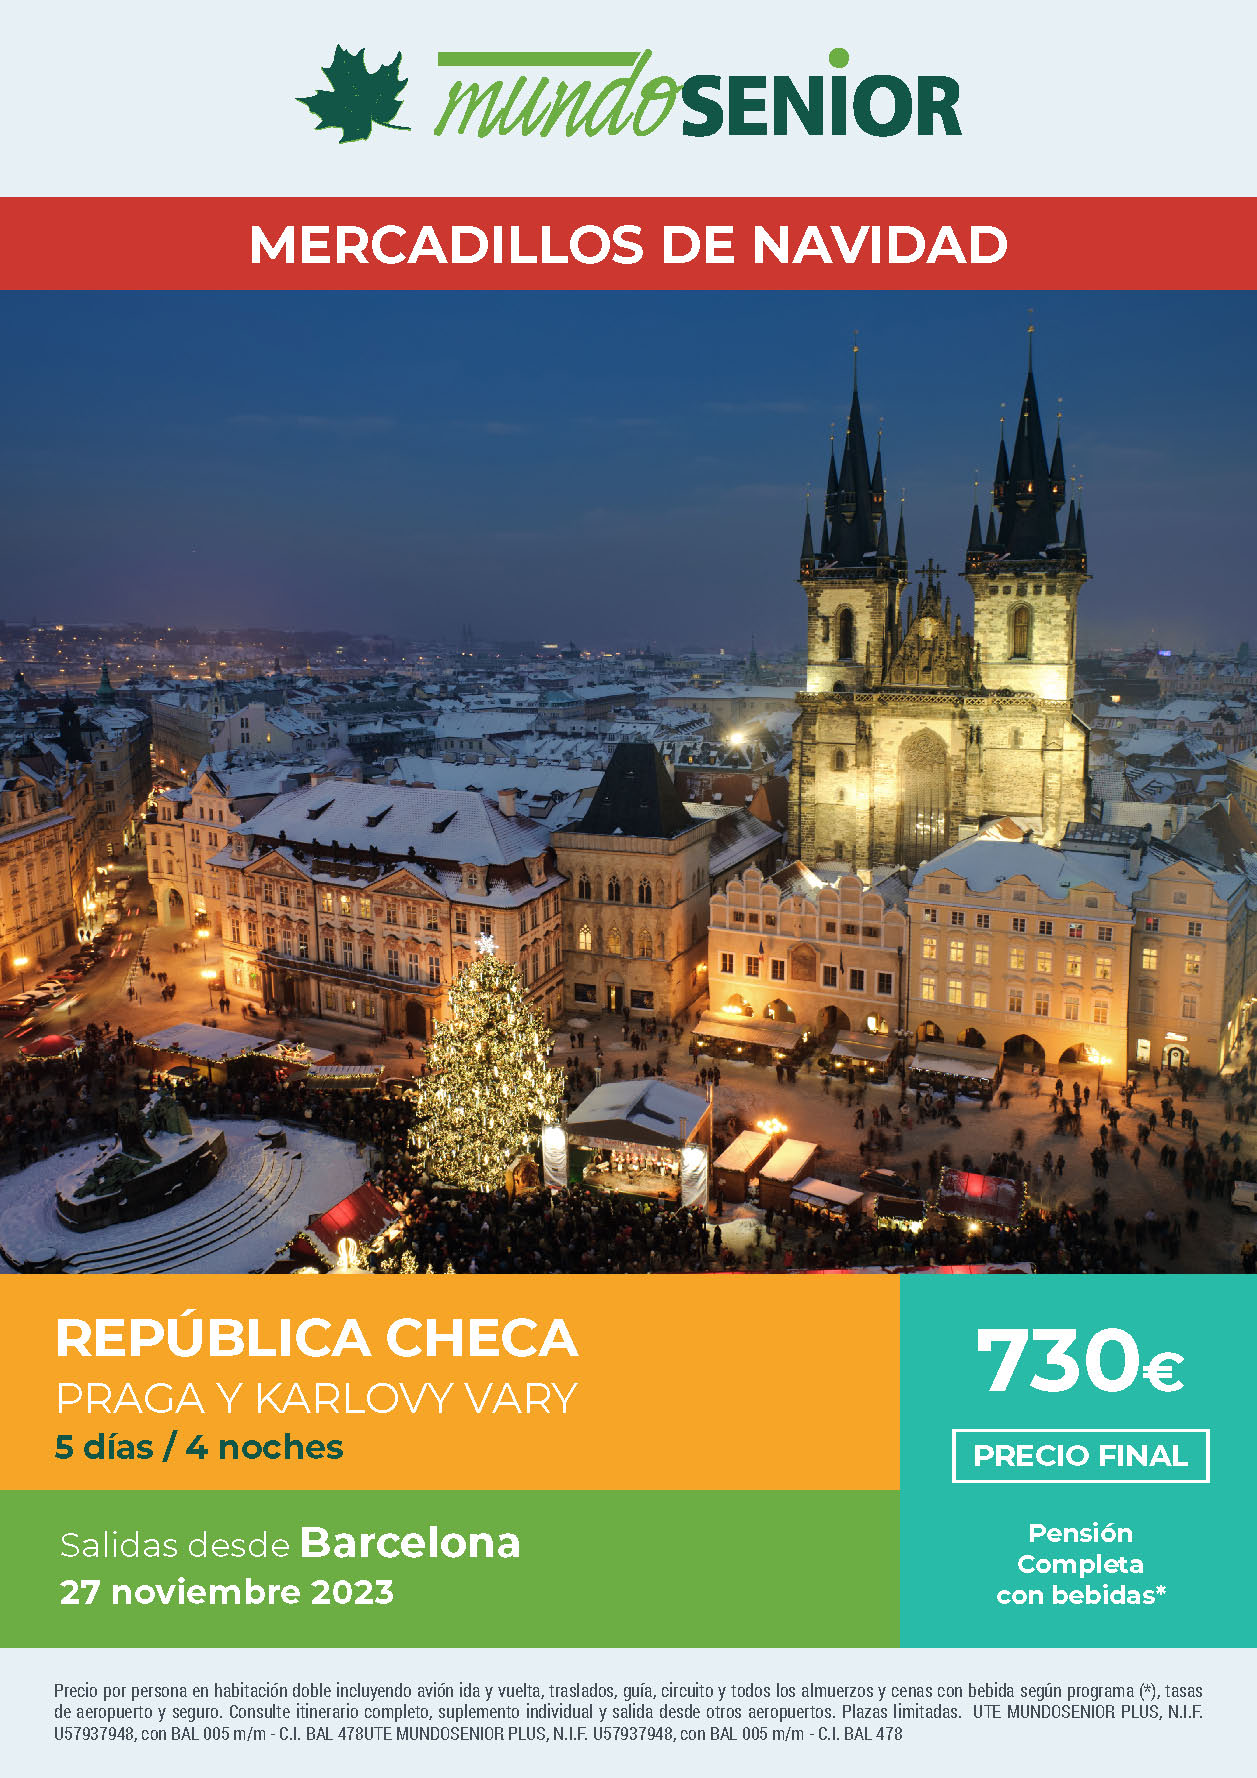 Oferta Mundo Senior Mercadillos de Navidad en Republica Checa Pension Completa 5 dias salida 27 noviembre 2023 desde Barcelona